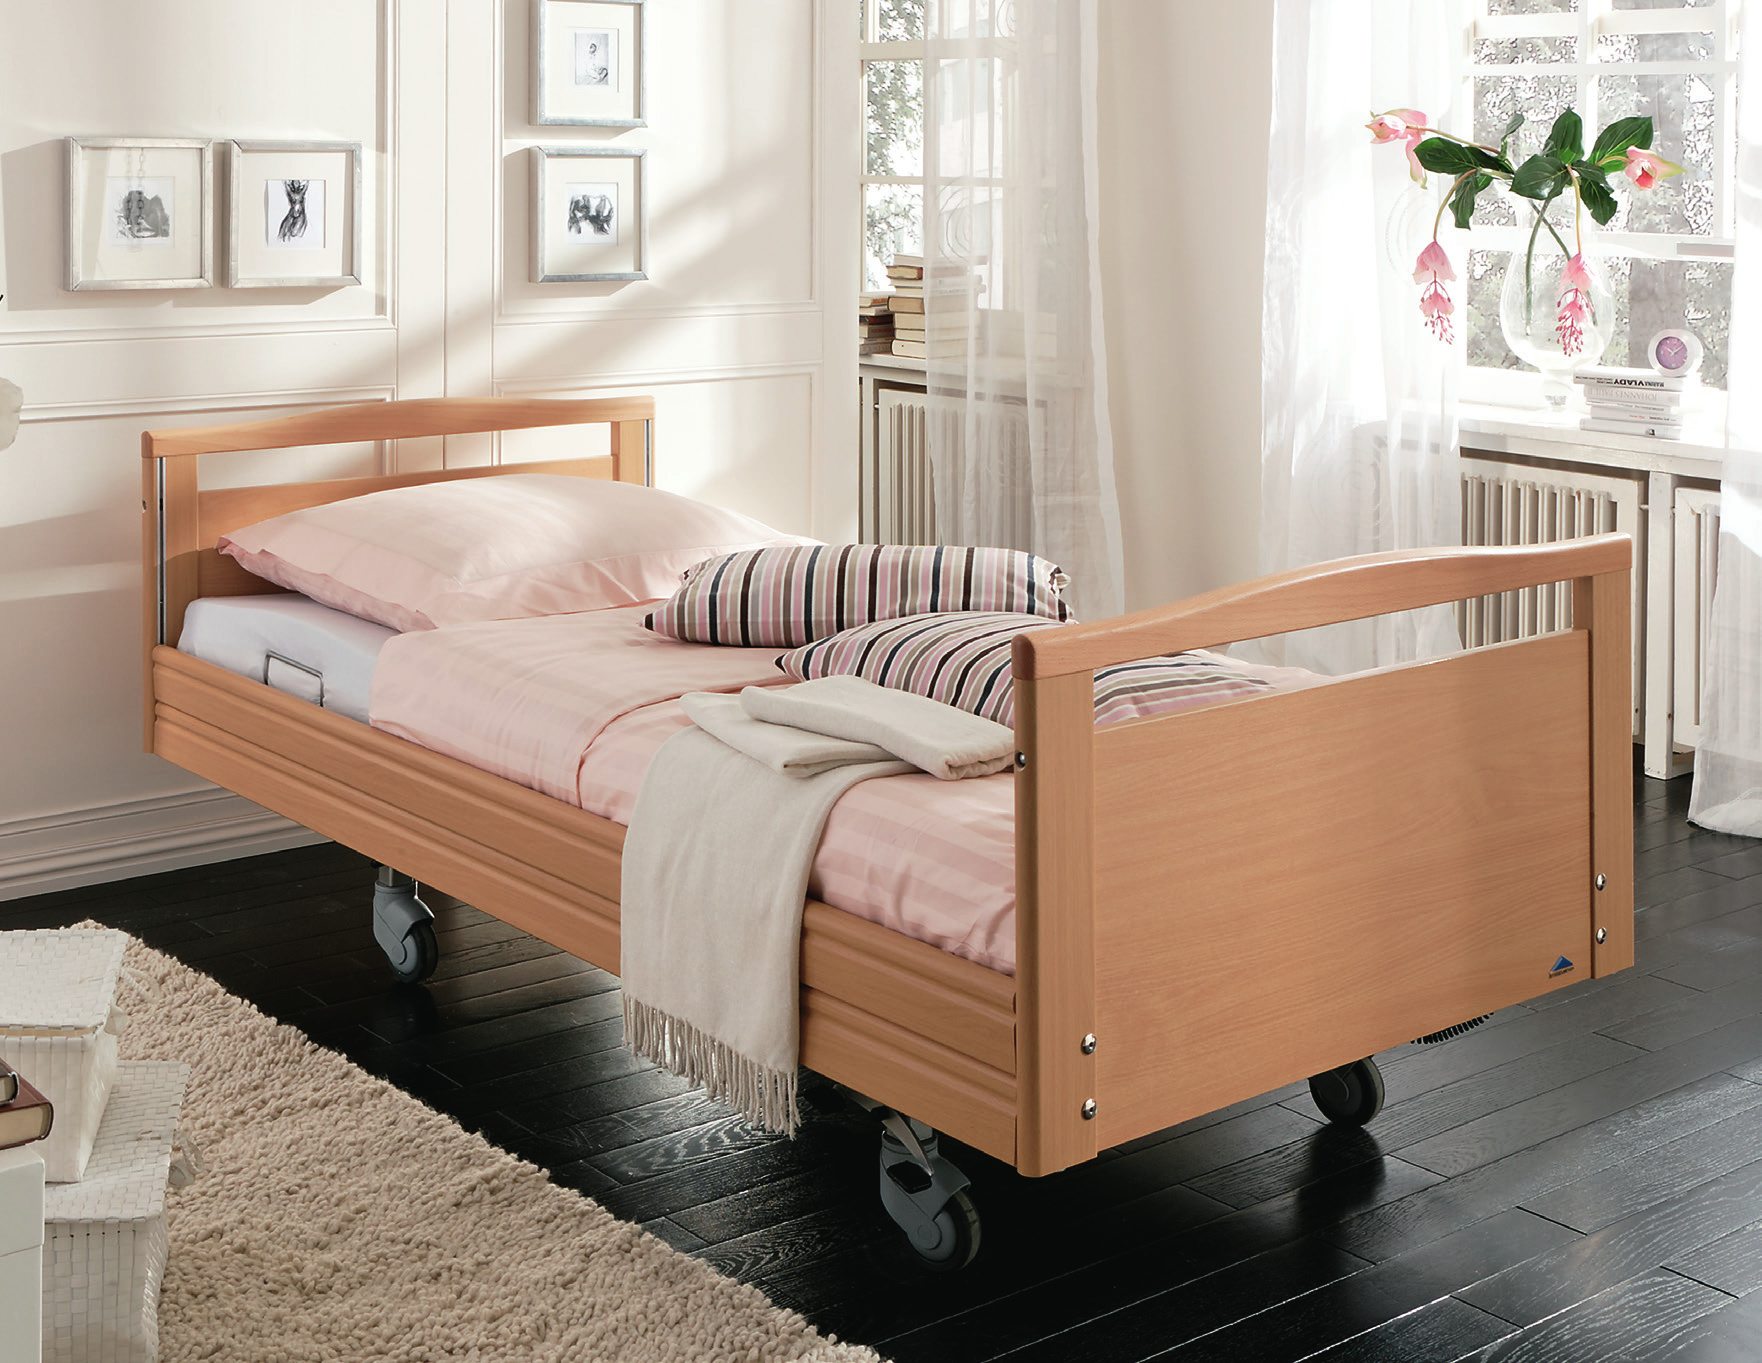 Het hoog-laag bed is een prachtige combinatie tussen design en praktische functionaliteit.